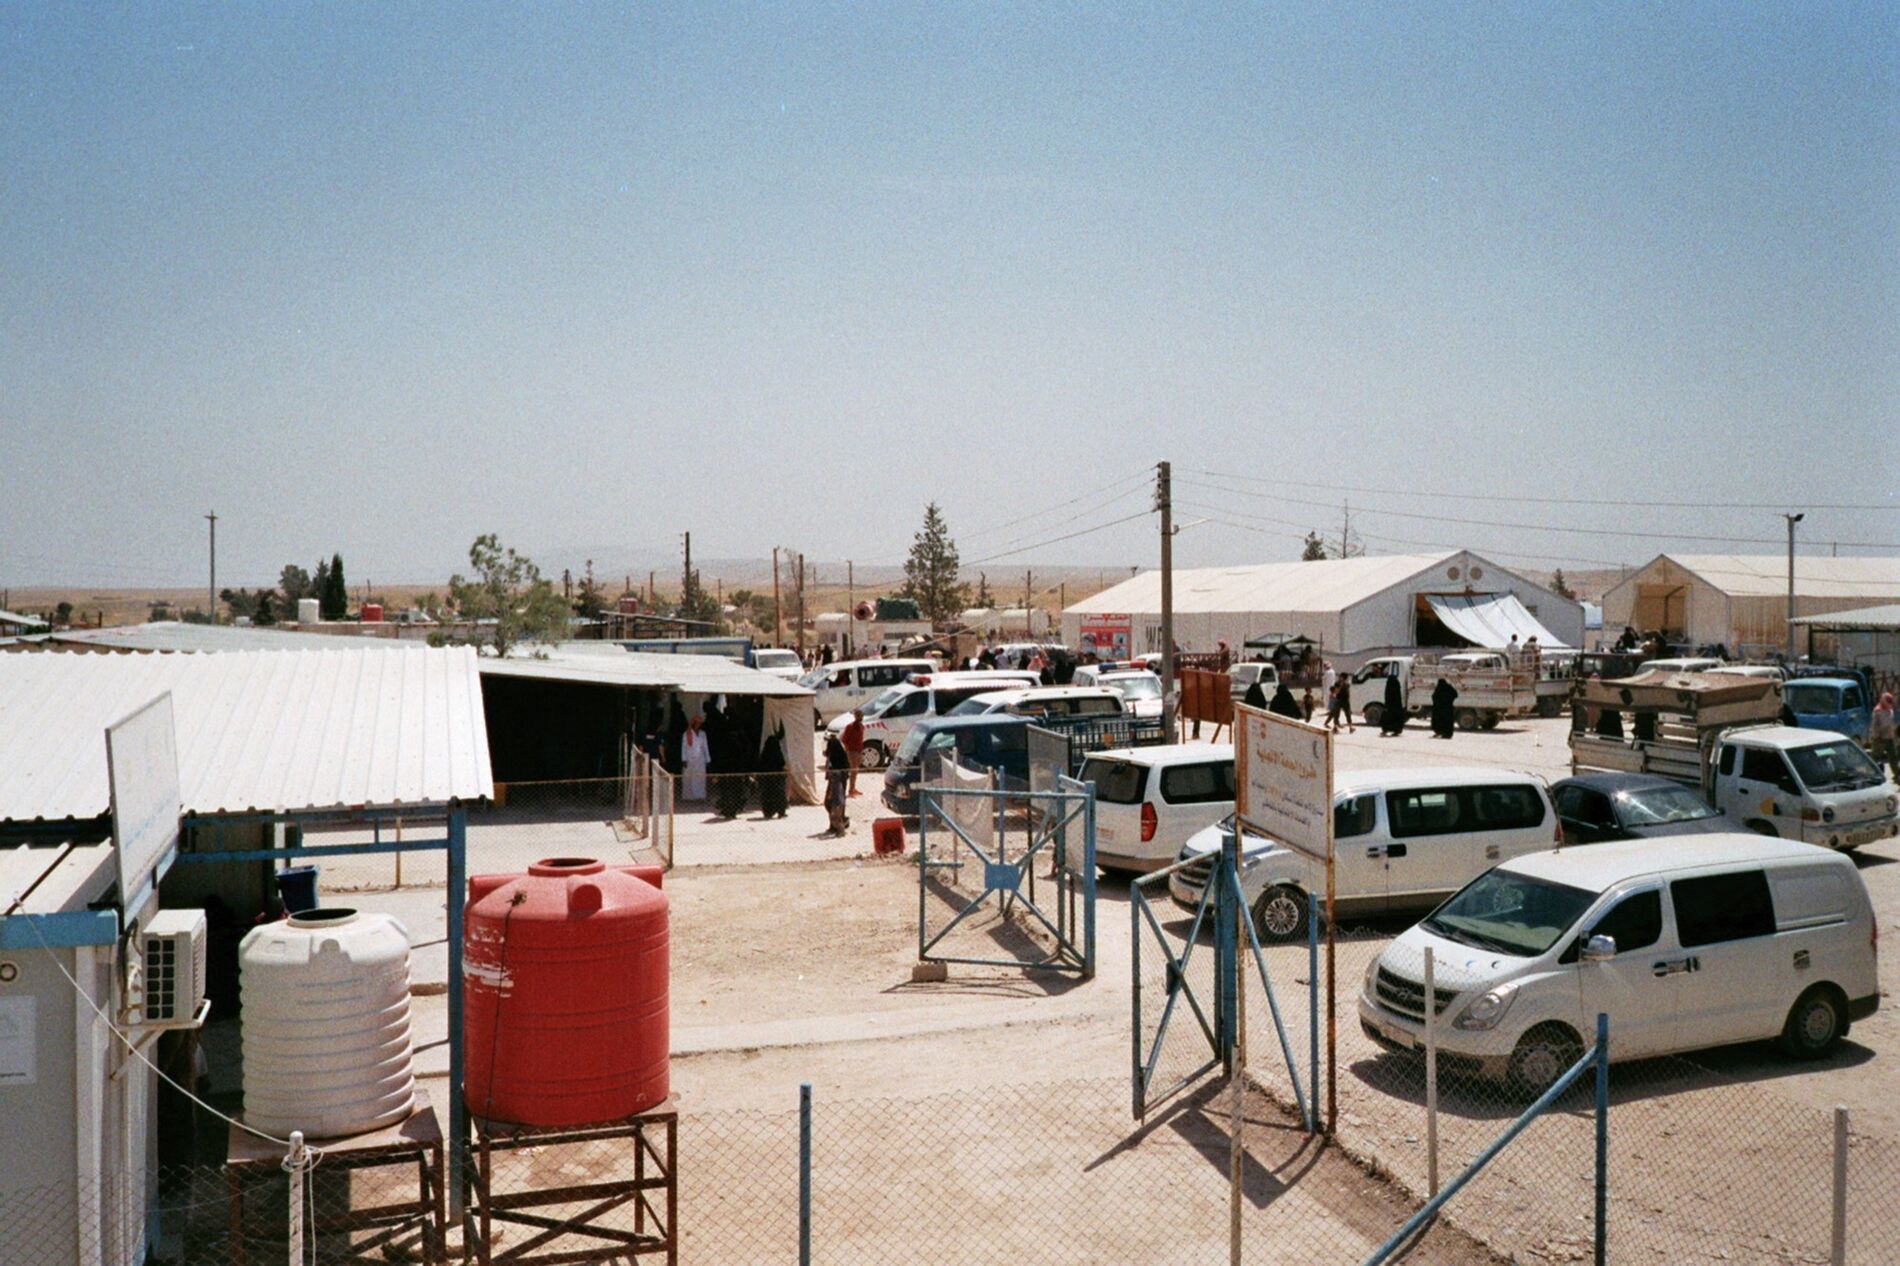 Überblick über das Camp vom Dach des Krankenhauses. Linker Hand Gesundheitsstationen anderer Organisationen, rechts Lagerhallen. In der Mitte der Hauptweg zum Eingang.